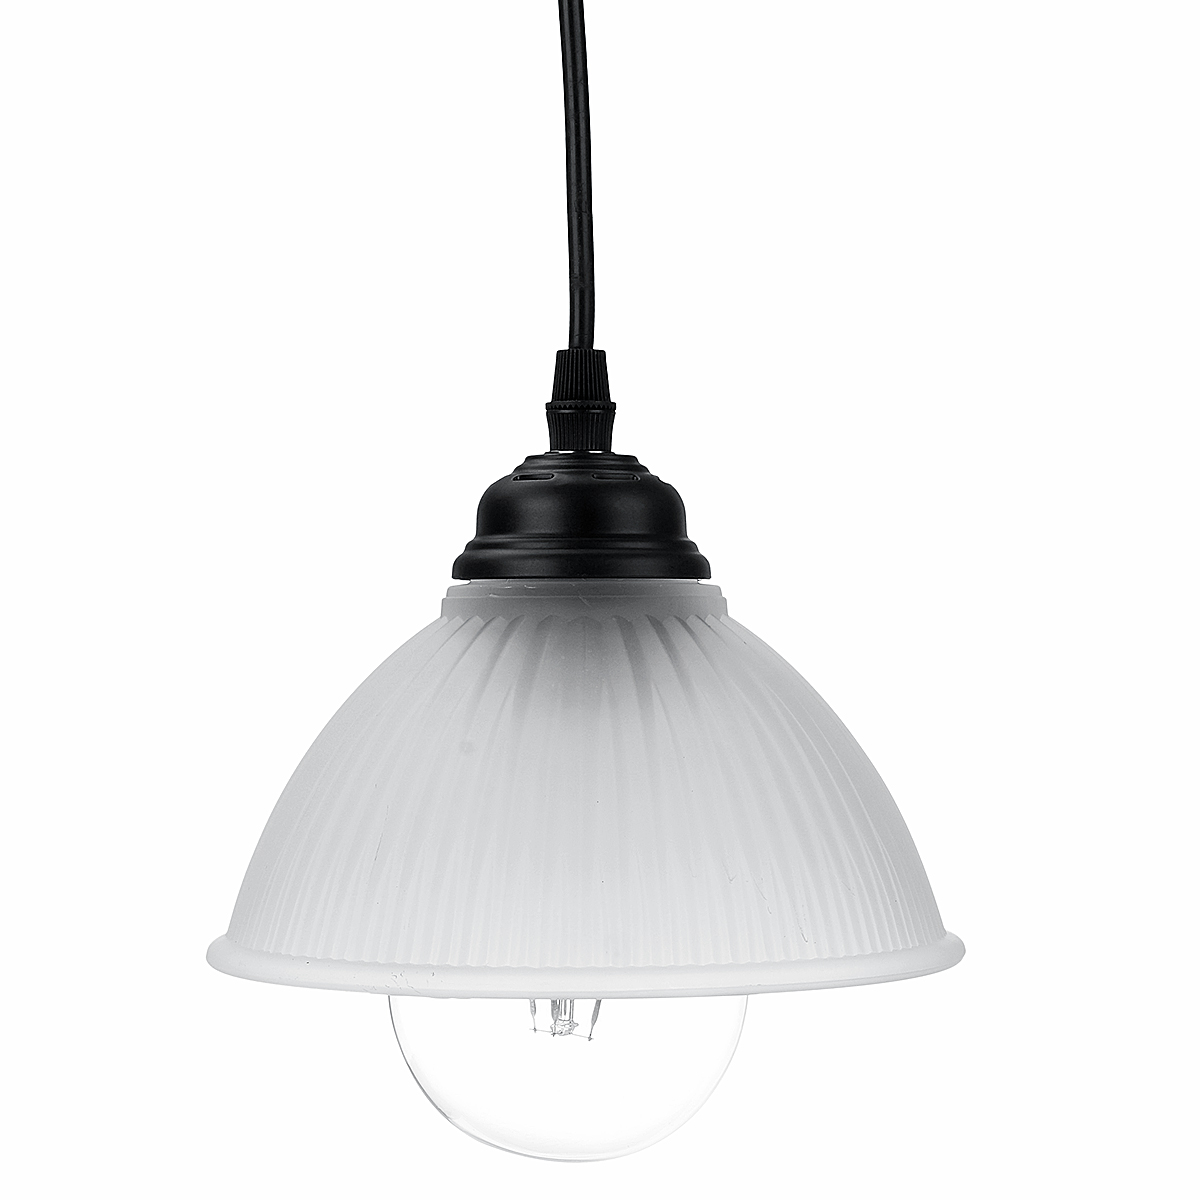 E26E27-Pendant-Light-LED-Ceiling-Lamp-Cafe-Loft-Dining-Room-Study-Restaurant-1851197-8